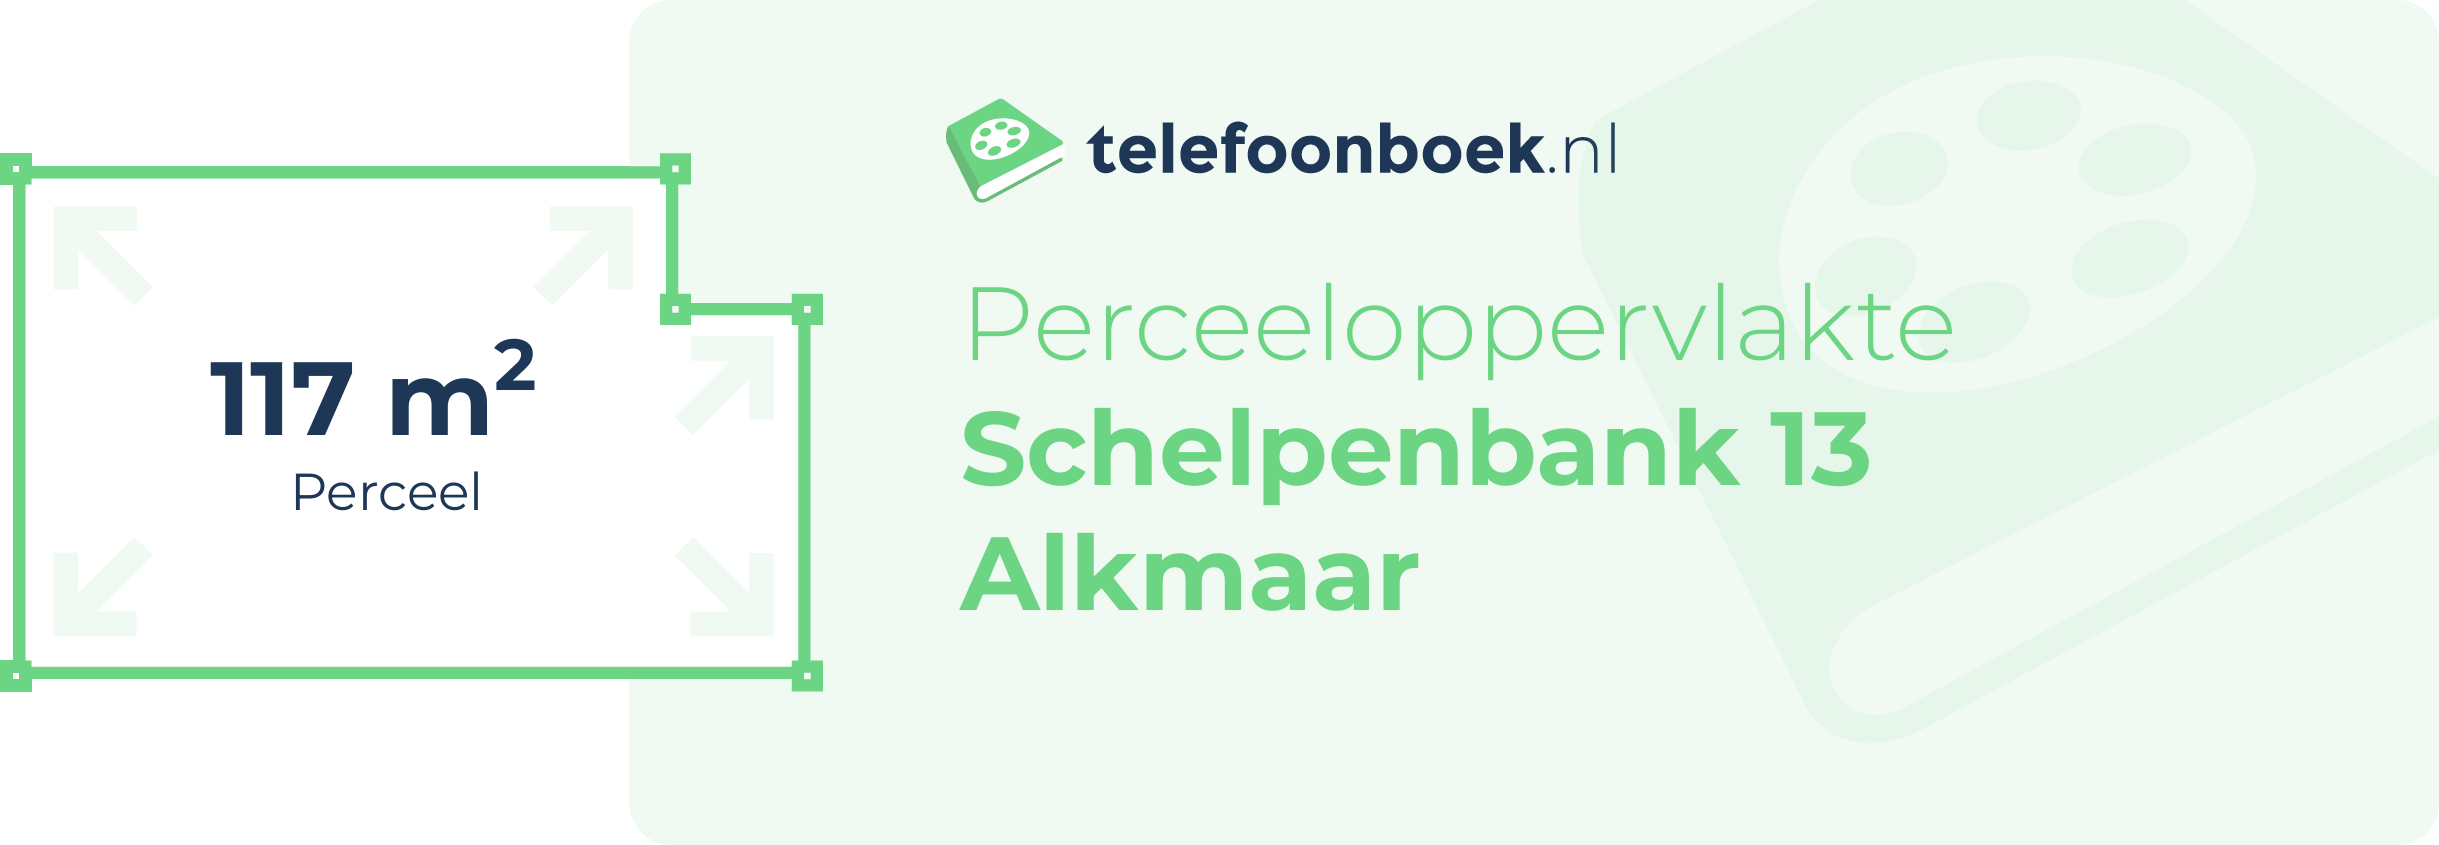 Perceeloppervlakte Schelpenbank 13 Alkmaar